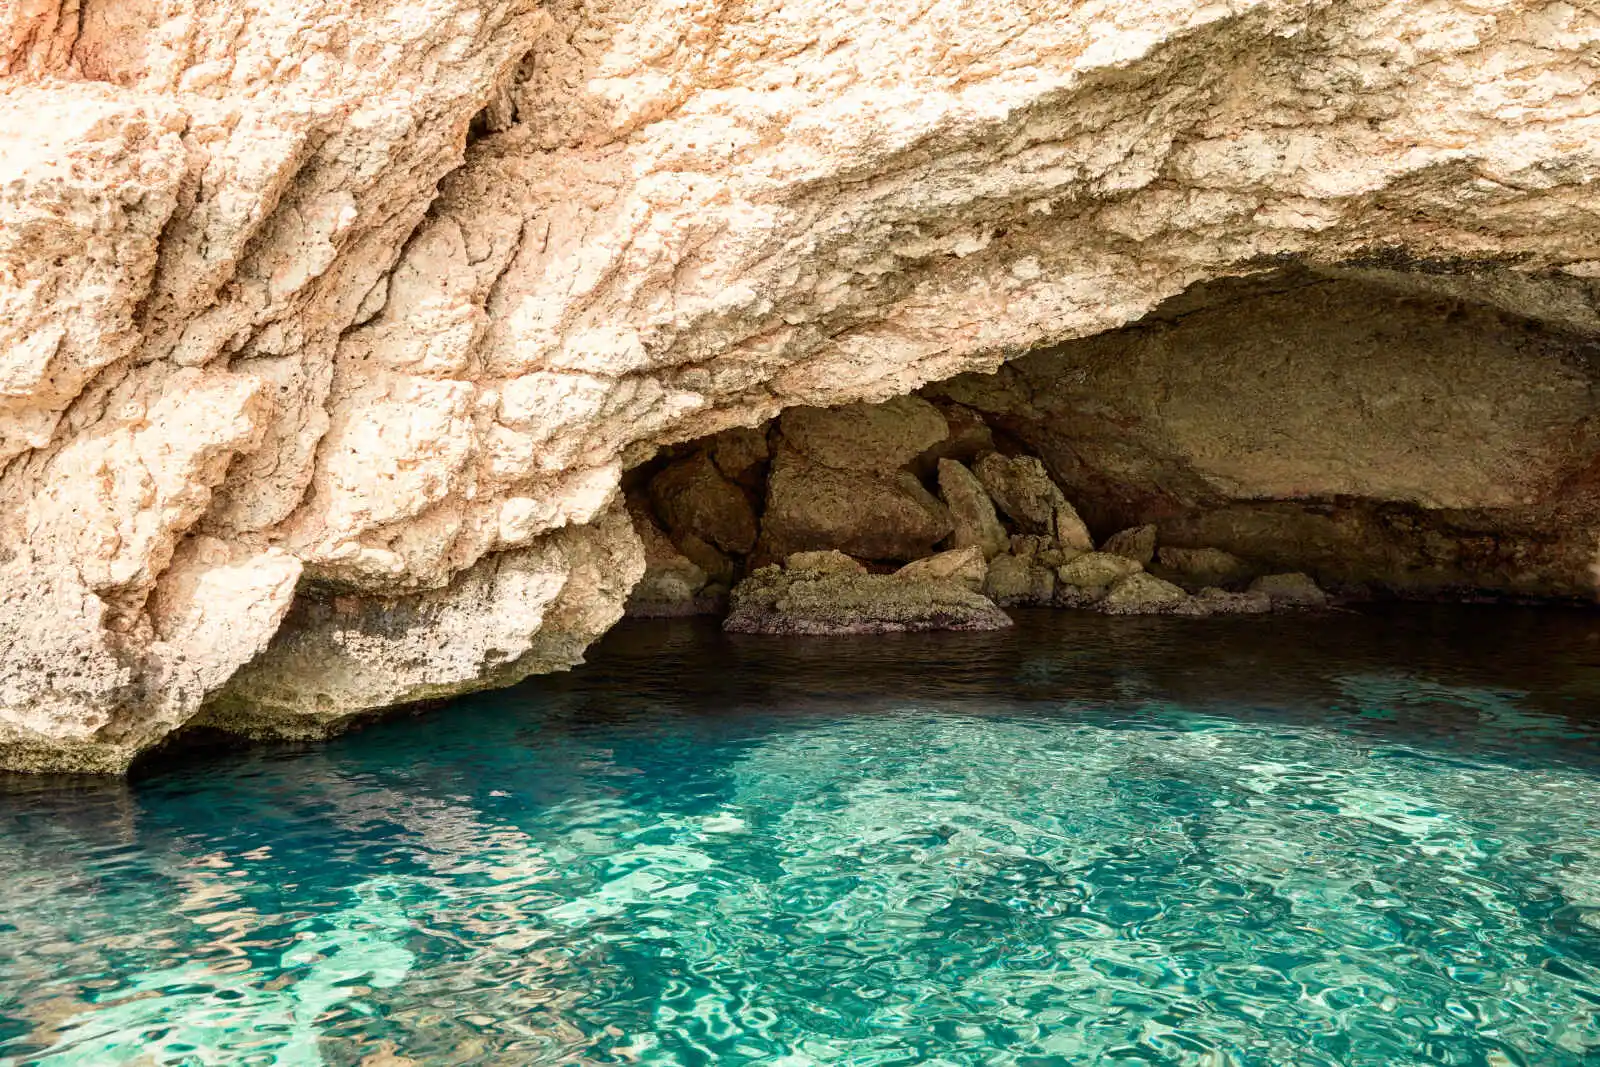 Grotte sous-marine à proximité de l'hôtel, hôtel Six Senses Ibiza